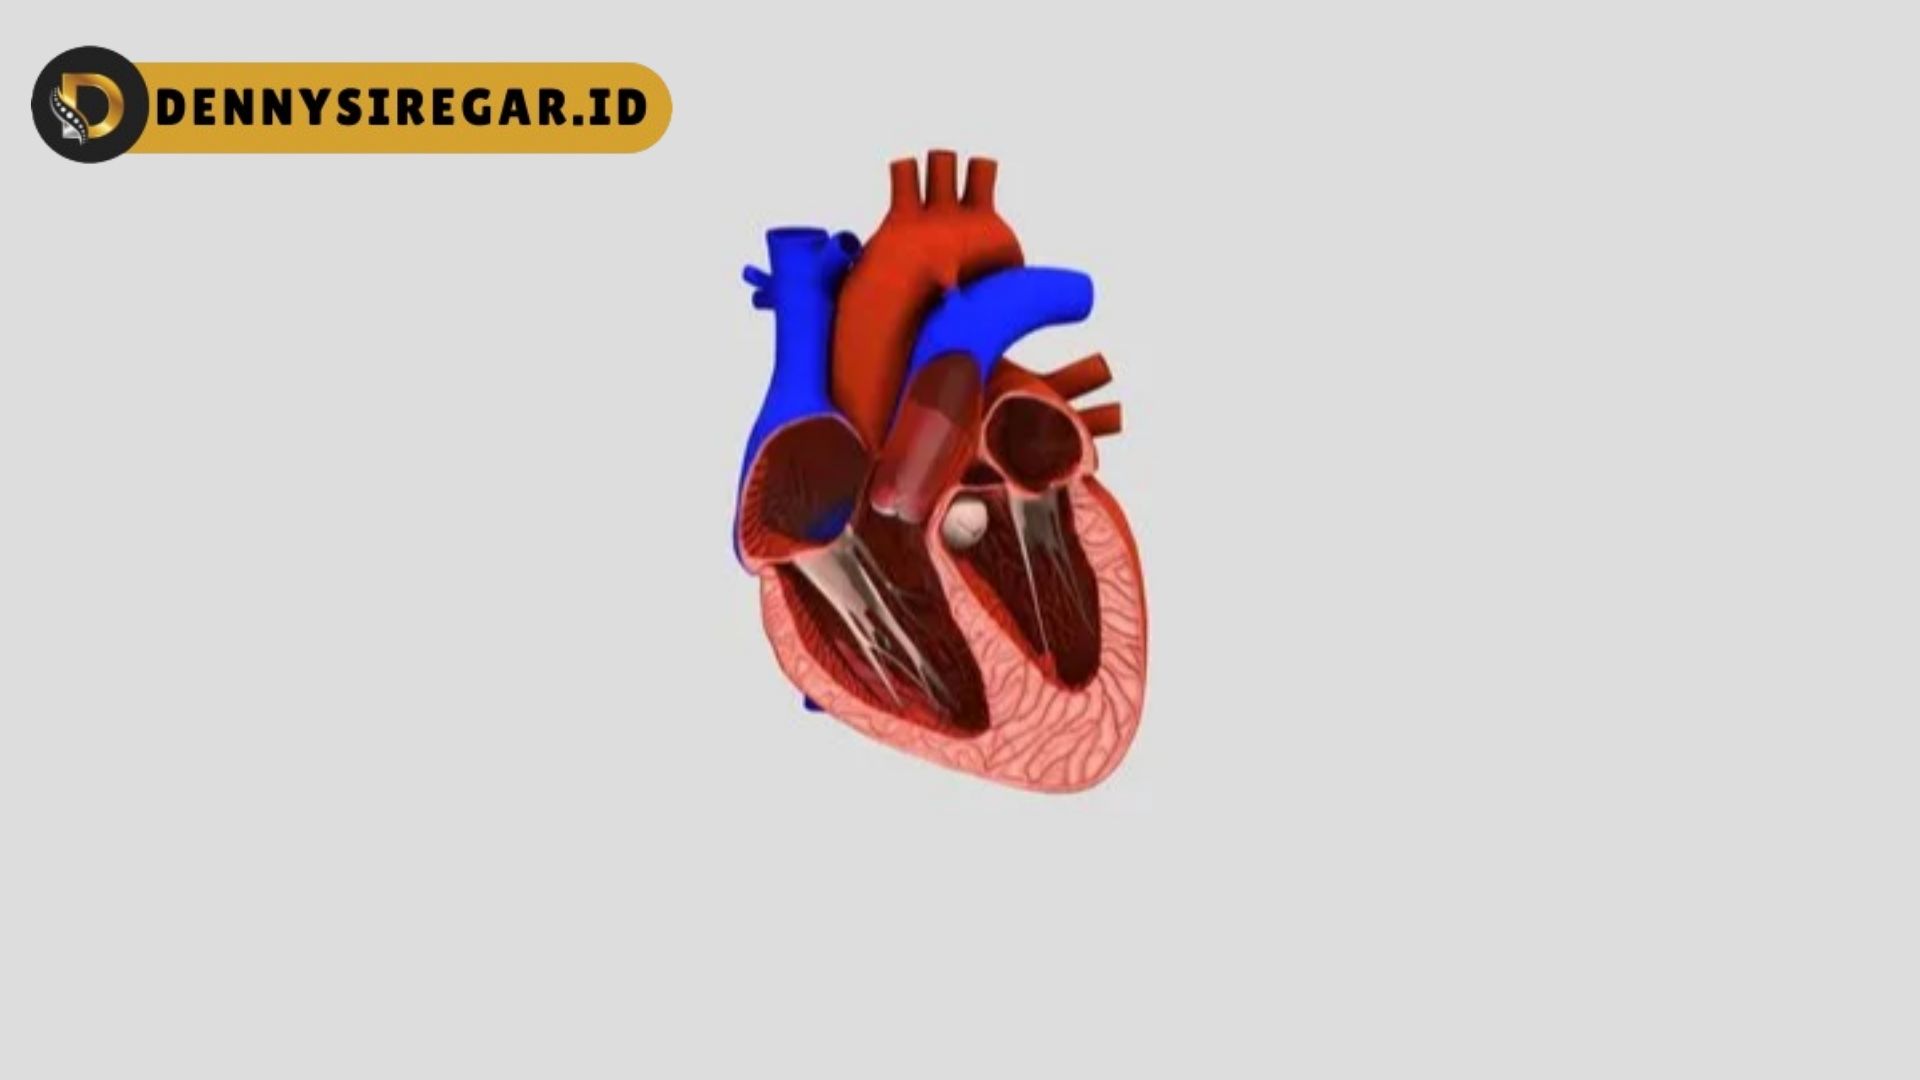 Model Jantung Manusia, Begini Penjelasannya!